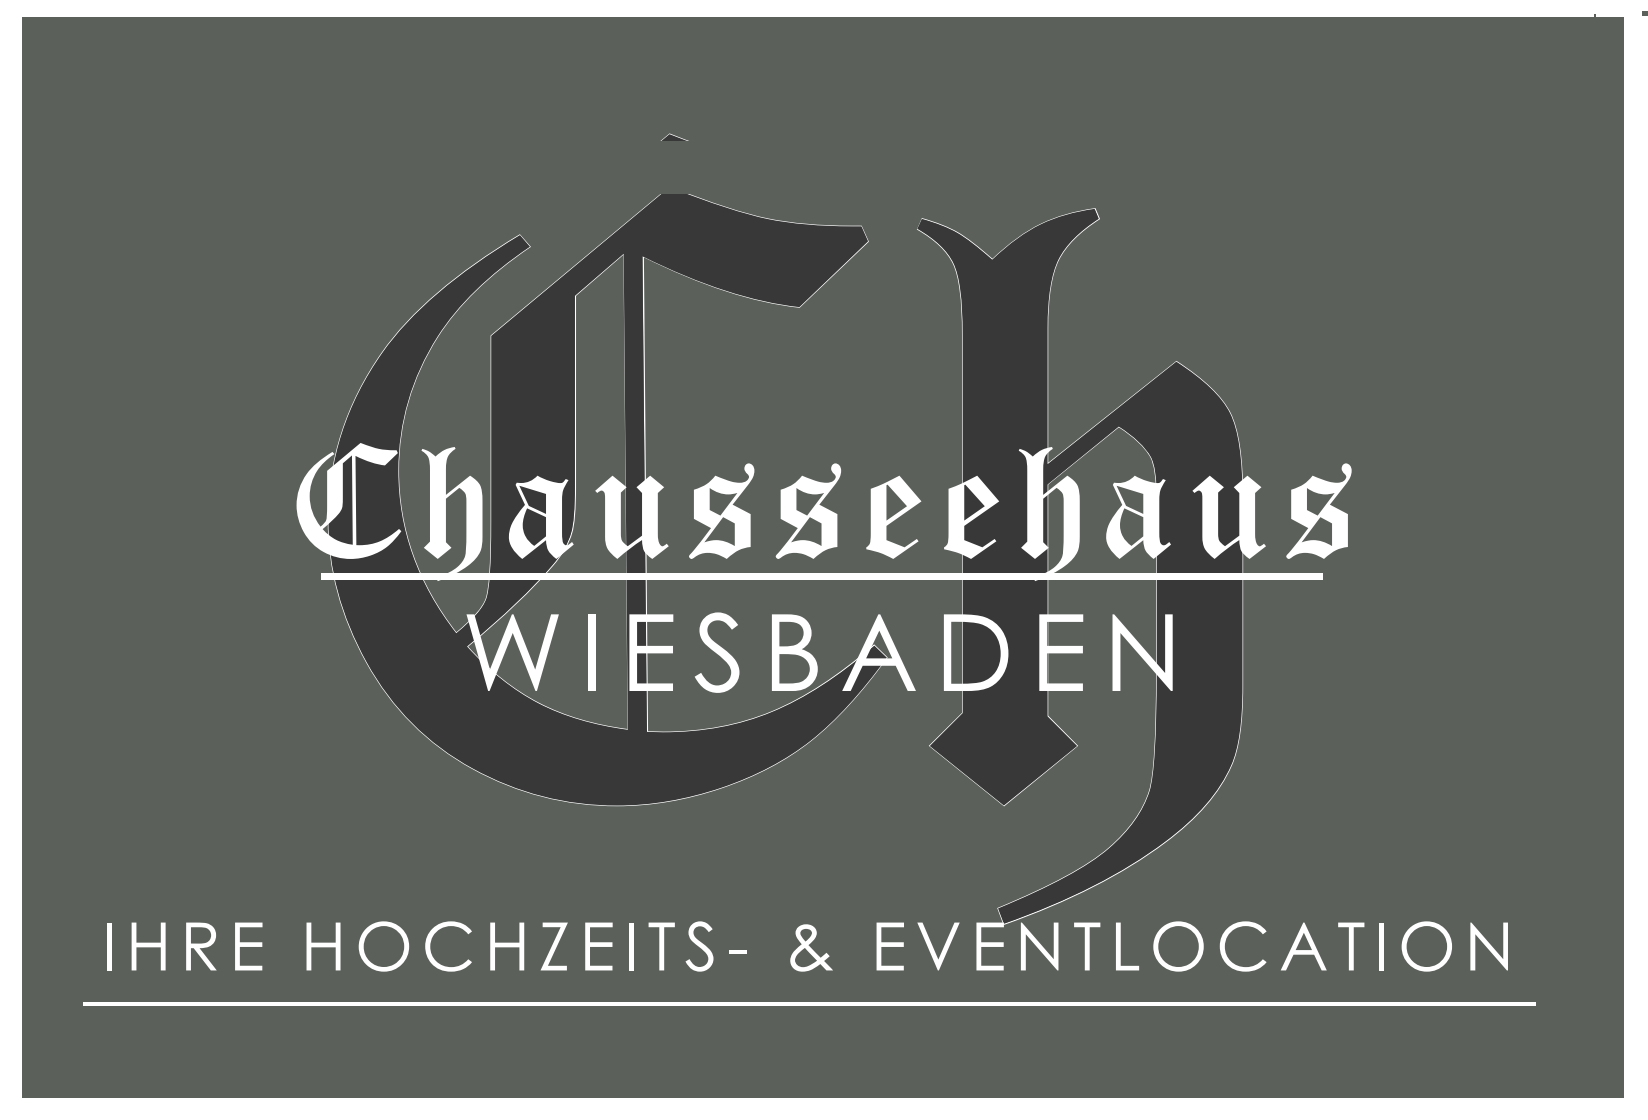 Chausseehaus Wiesbaden attached image